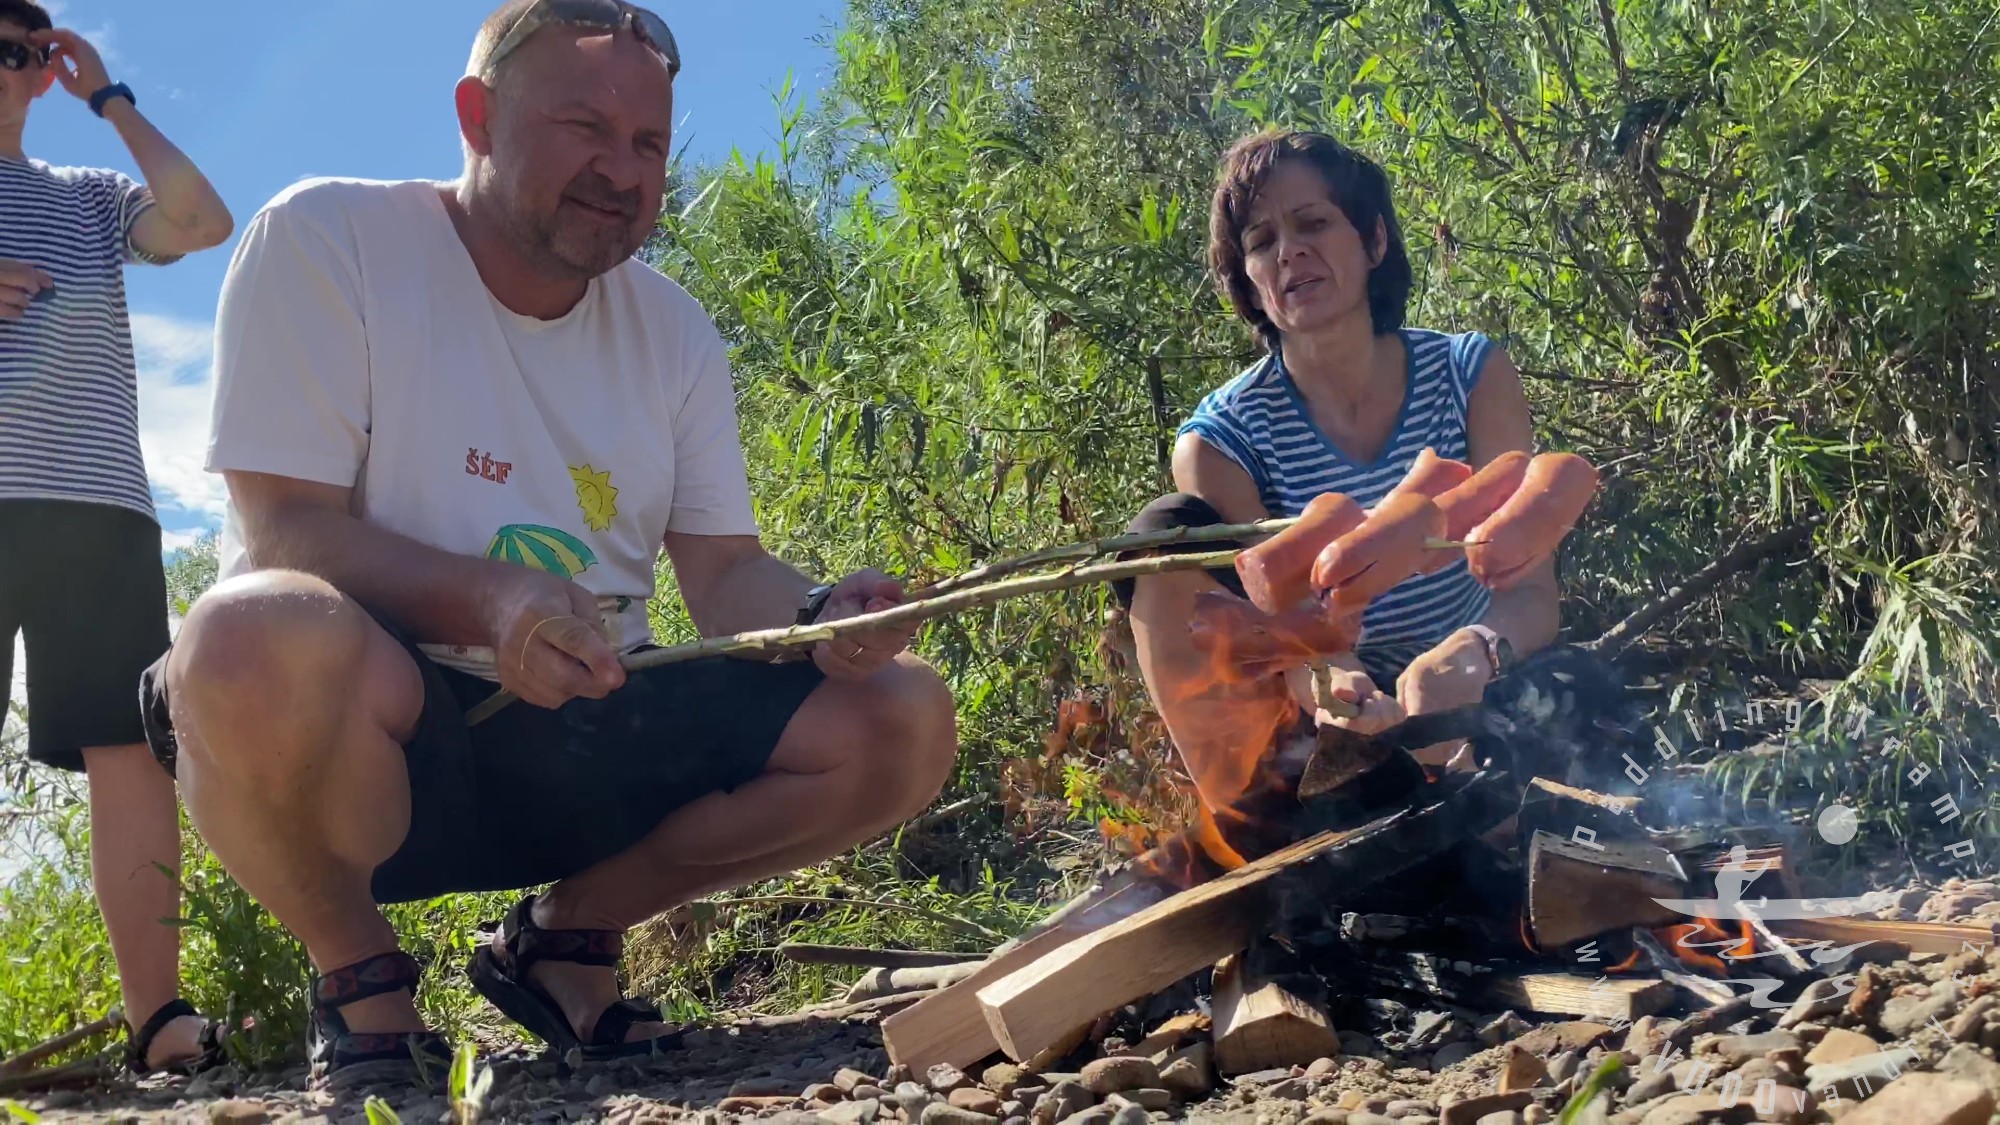 Splutí řeky s rodinou a kamarády | Vaření na ohni u vody | Bushcraft na vodě | Kánoe Gumotex Pálava